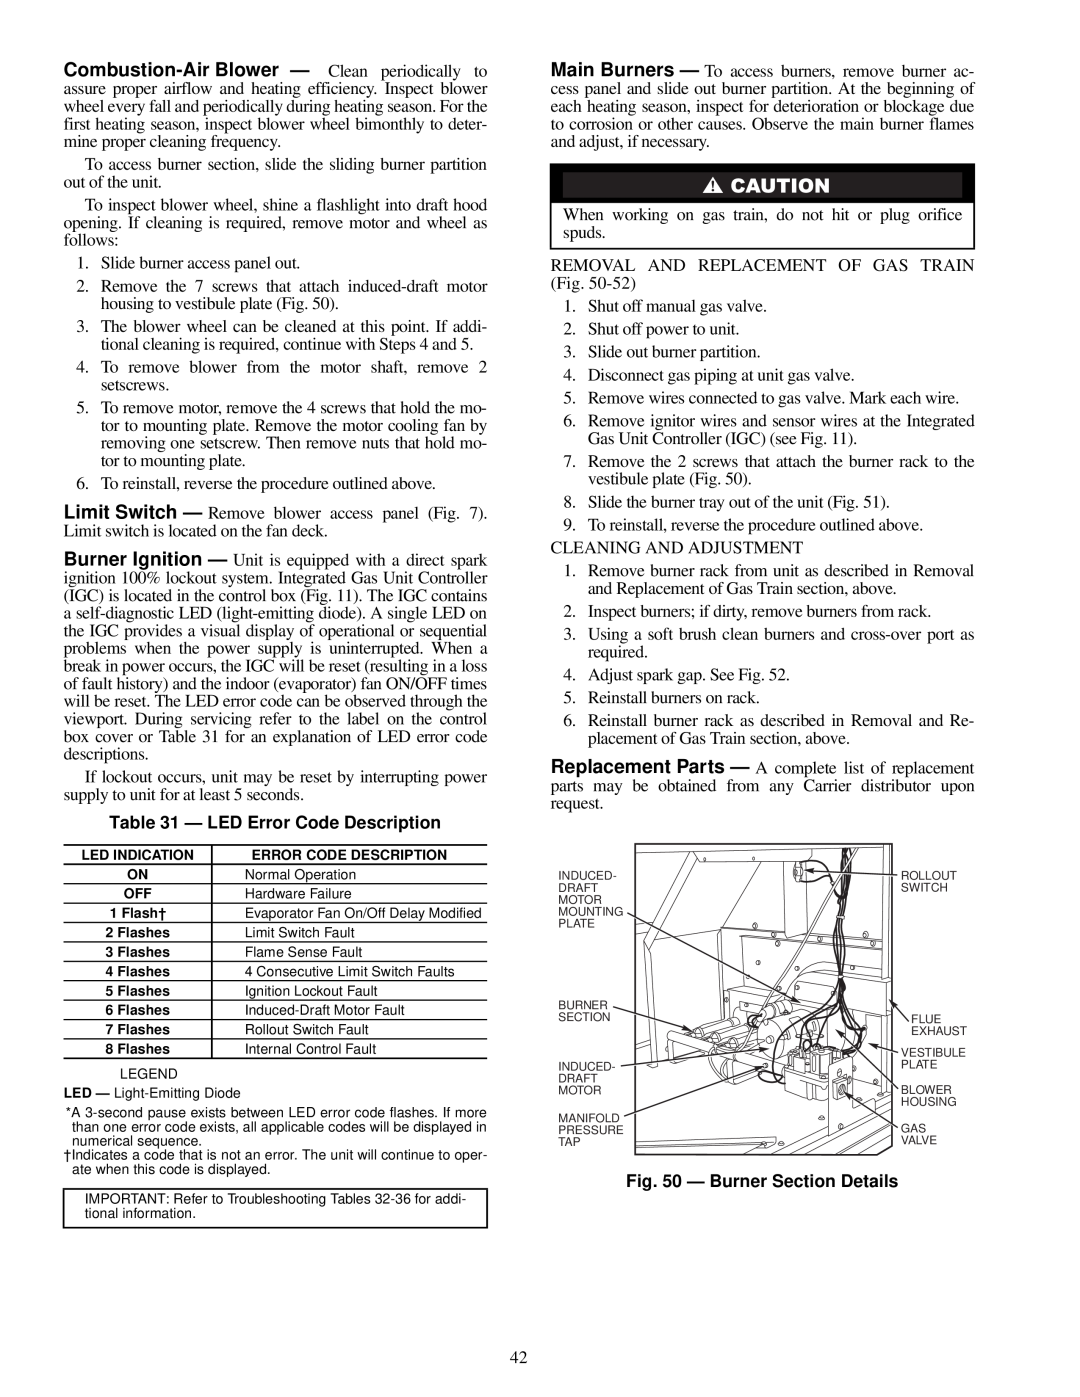 Carrier 48TF004-007 specifications LED Error Code Description, Burner Section Details 